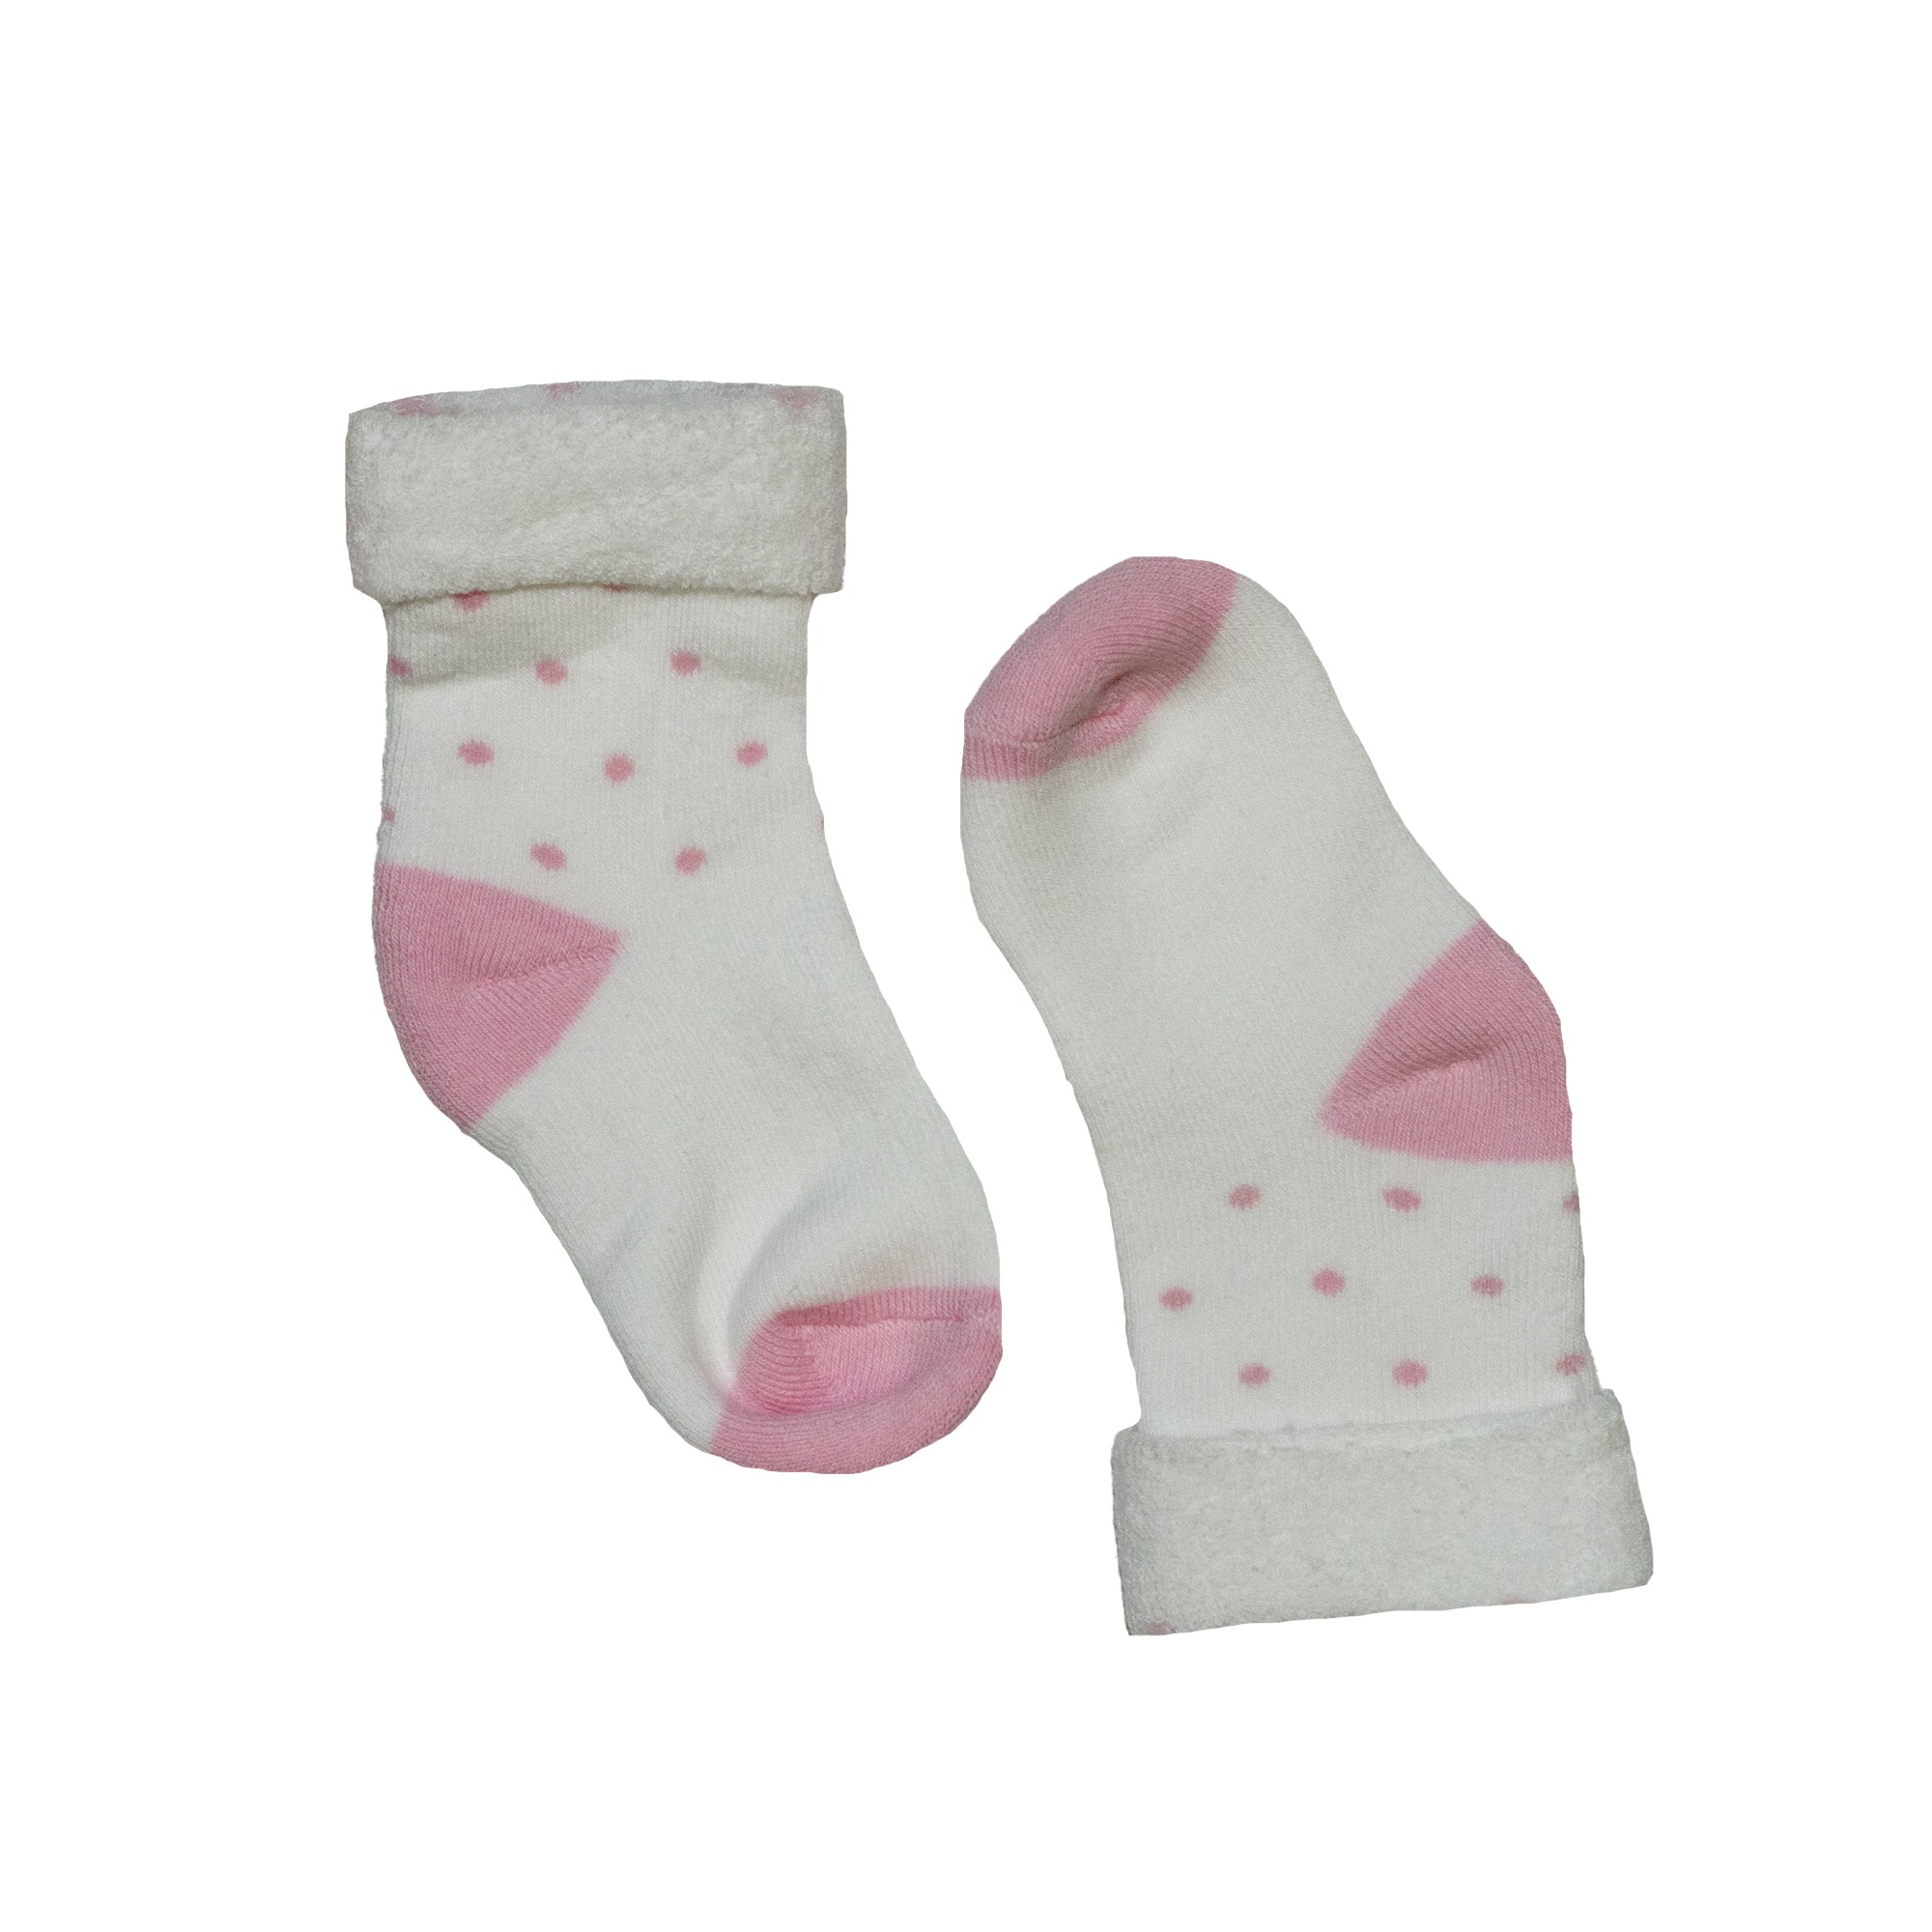 

Детские носки ( 1 шт ) George белый, розовый в горошек с розовой пяткой и носочком 1-2 года (- р) 695, Детские носки ( 1 шт ) George белый, розовый в горошек с розовой пяткой и носочком 1-2 года (20-22 р) 695